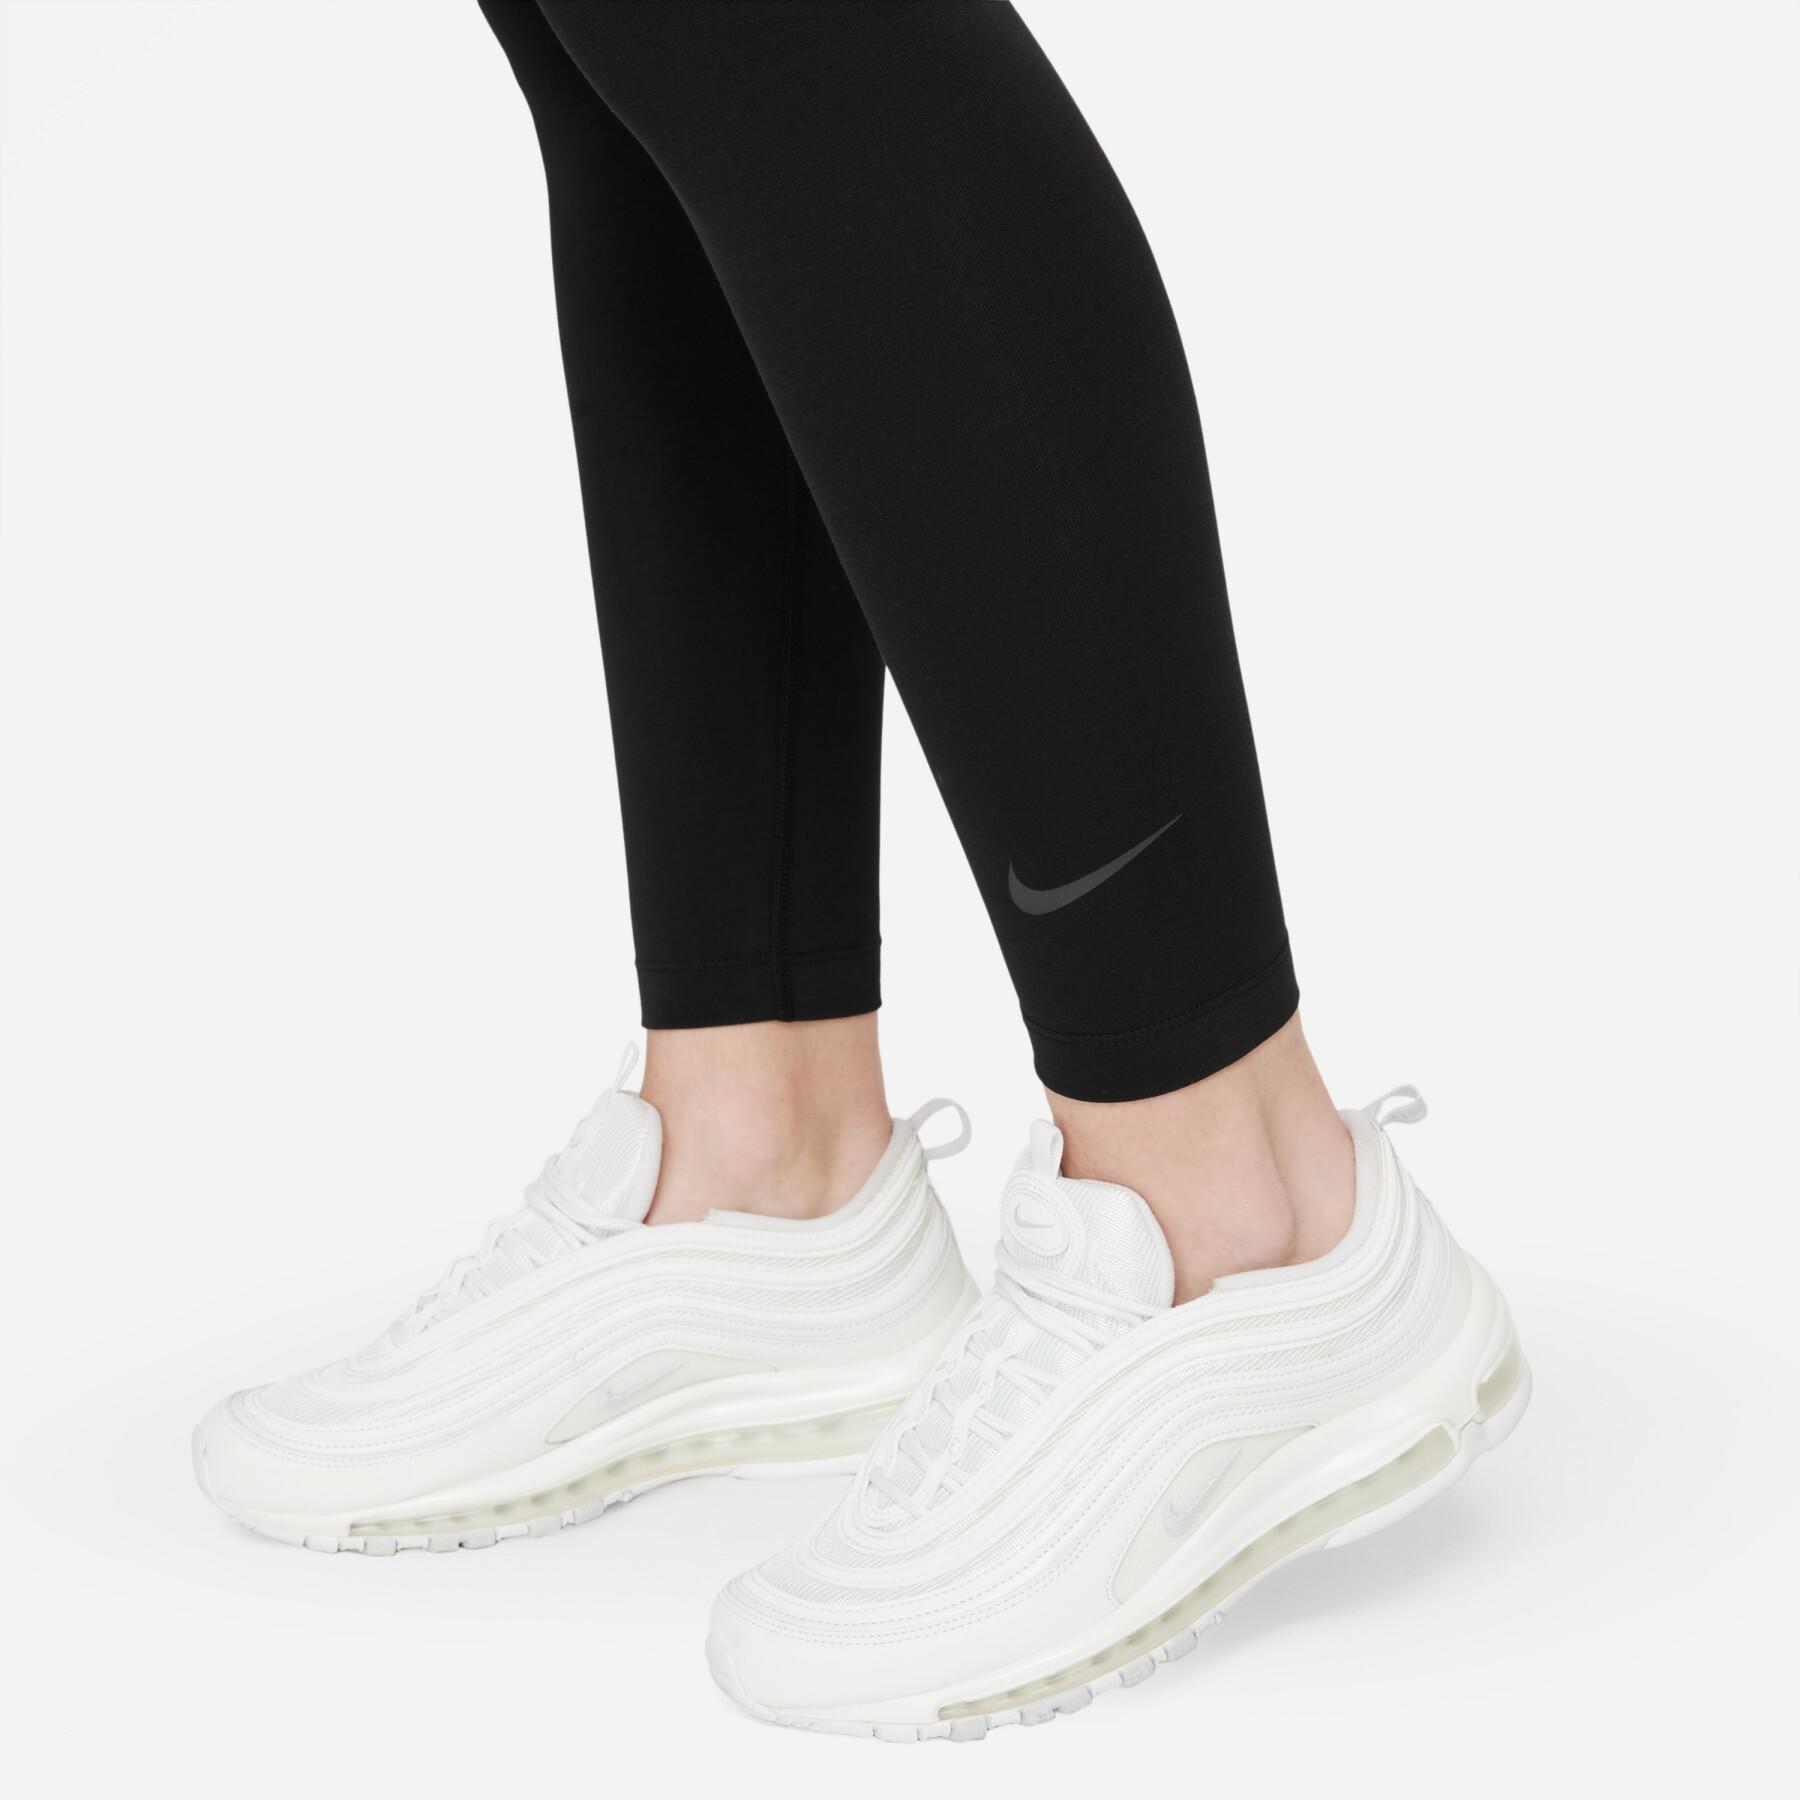 Legging femme Nike Sportswear Club